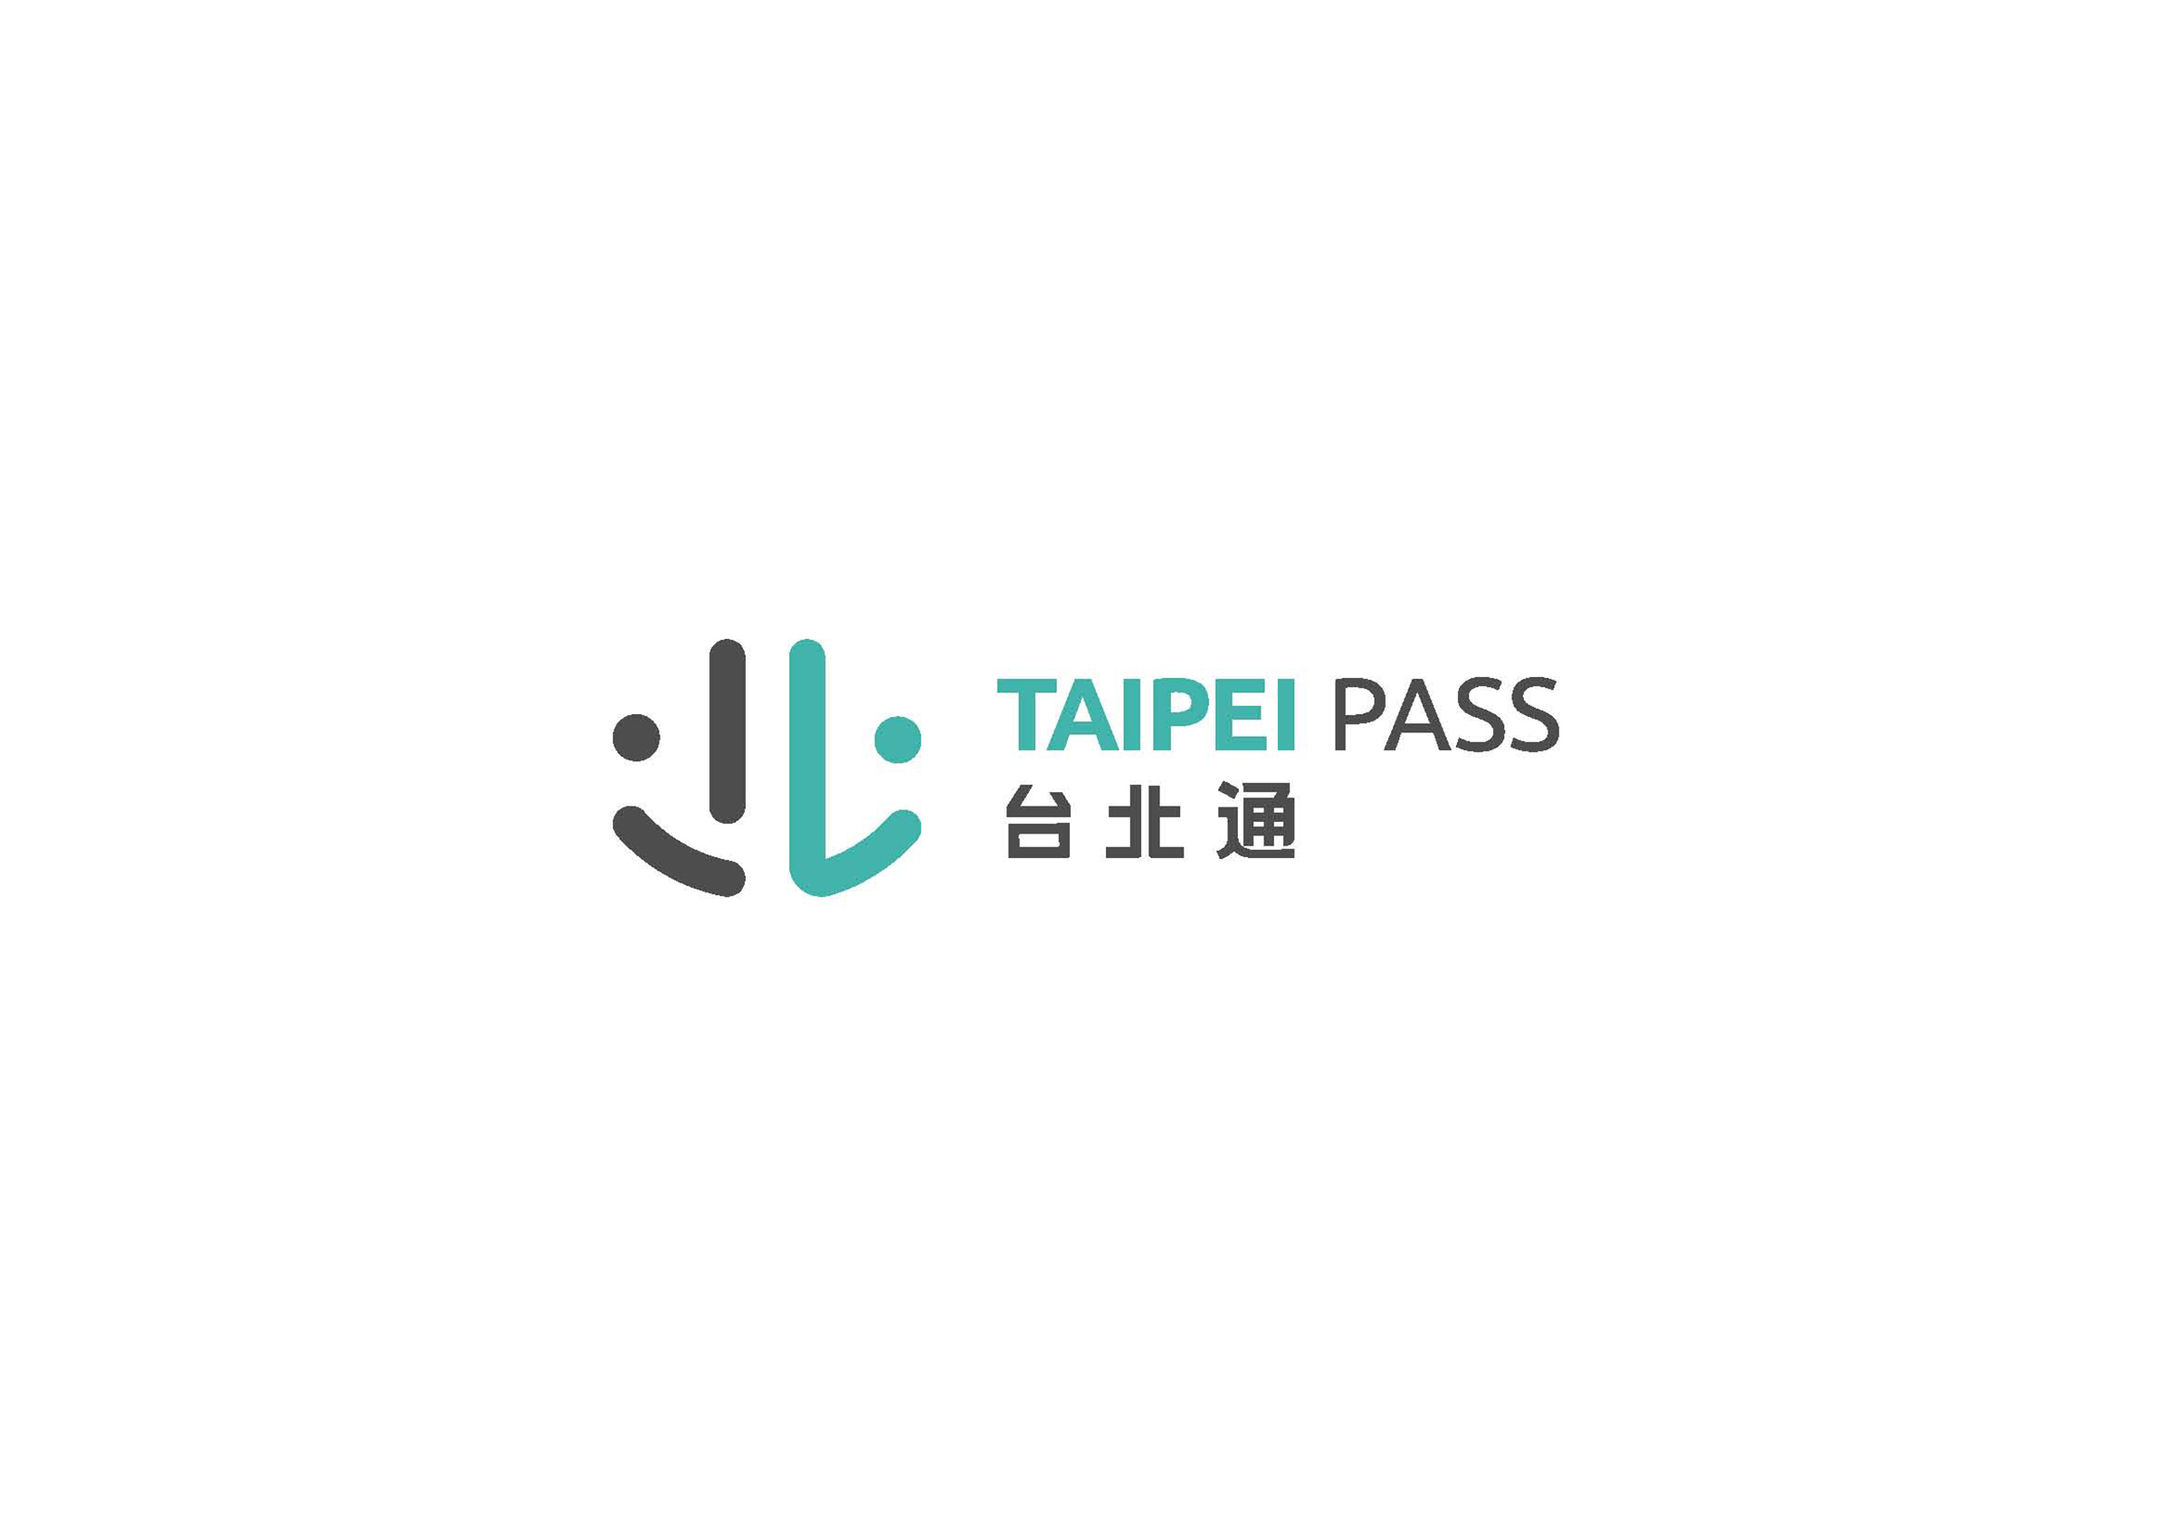 Taipei Pass